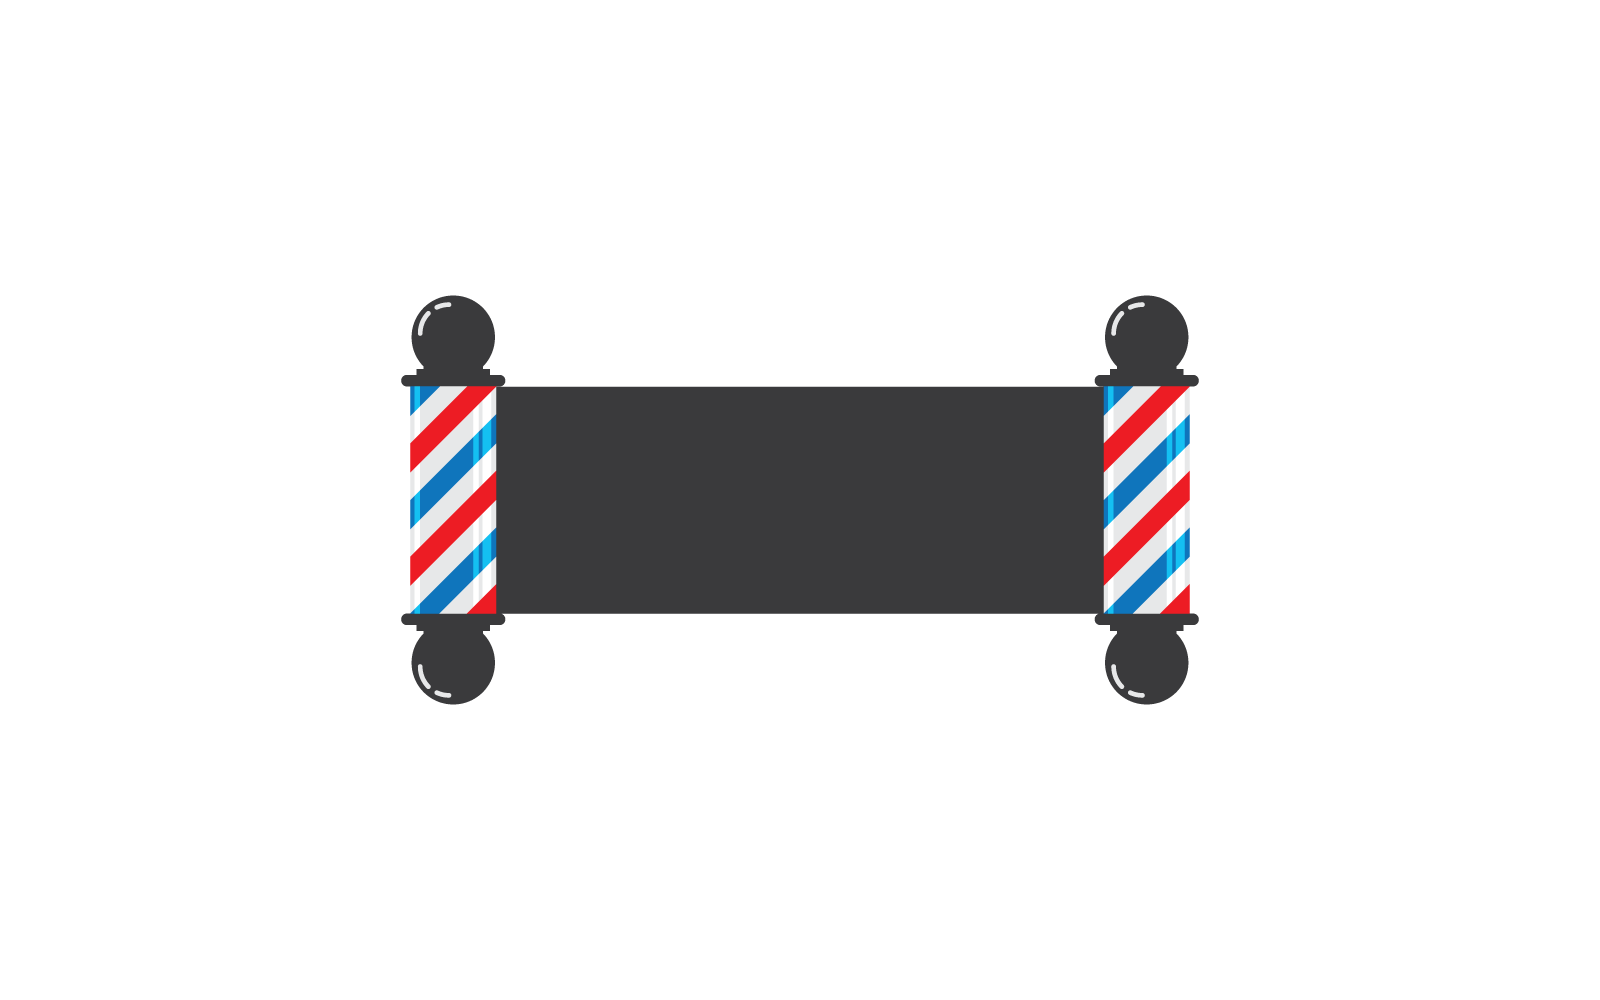 Barber pole logo illustration vector flat design template